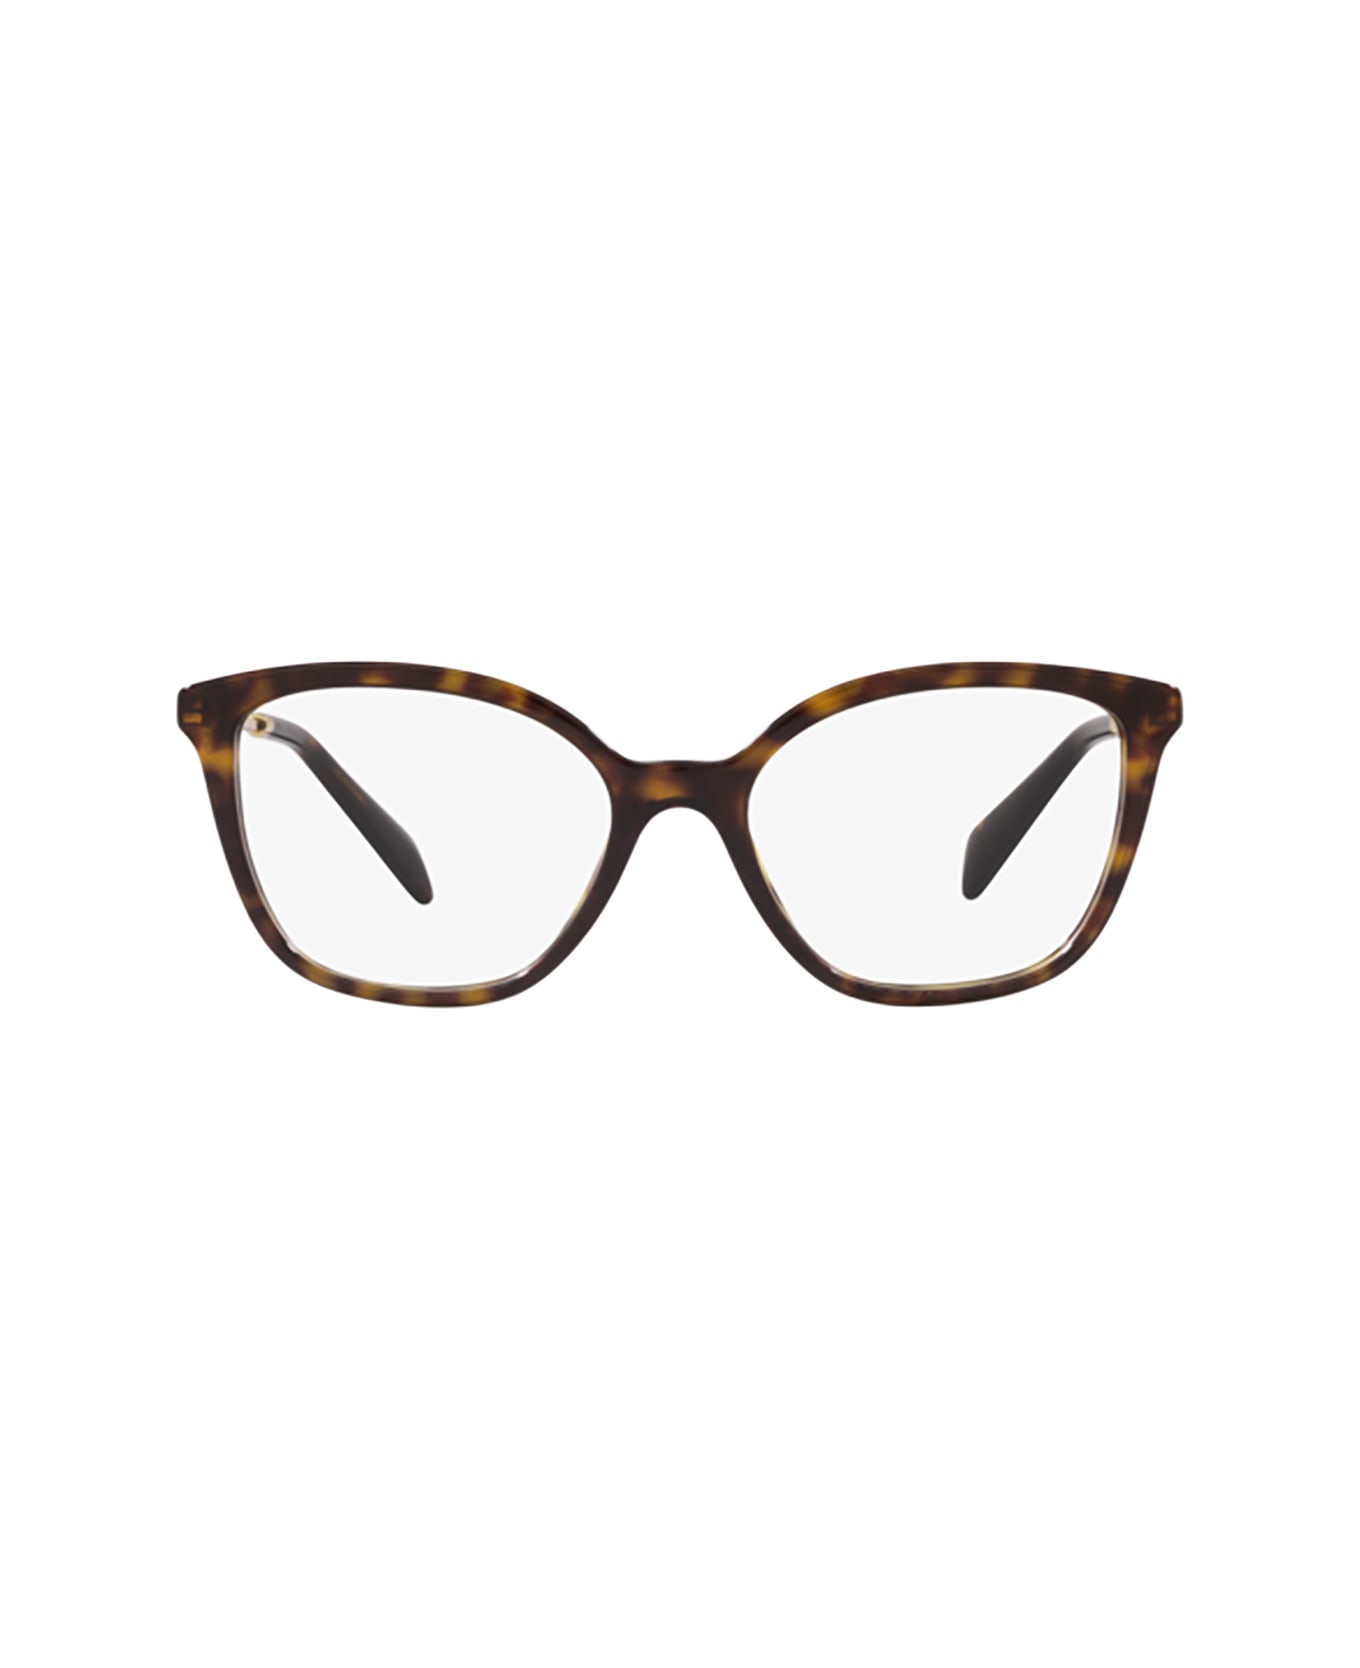 Prada Eyewear Pr 02zv Tortoise Glasses - Tortoise